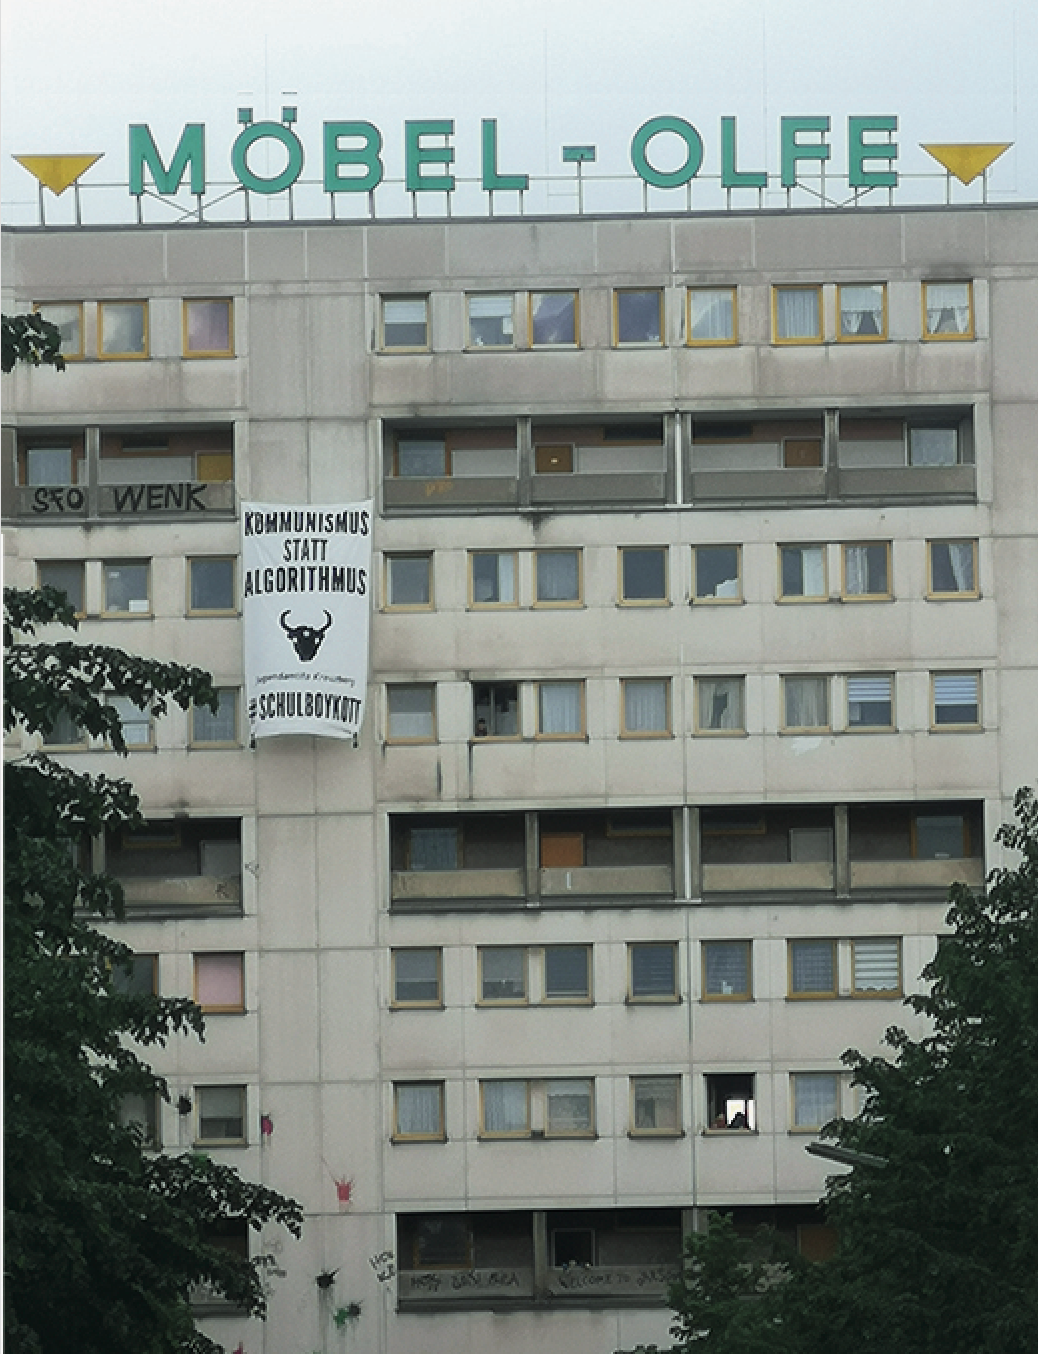 1.Mai in Kreuzberg, Berlin, 2020